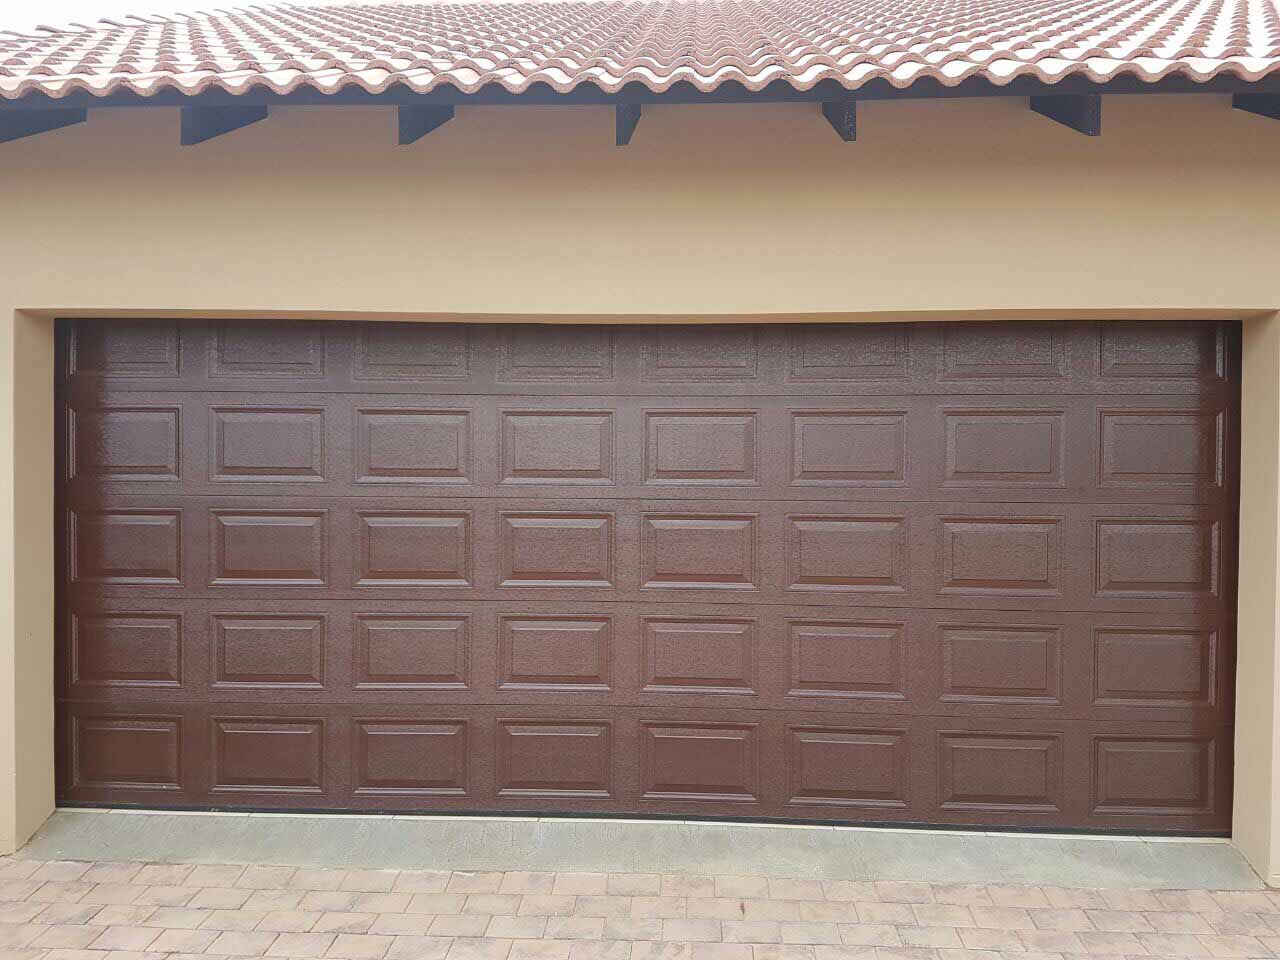  Garage Door For Sale In Cape Town 